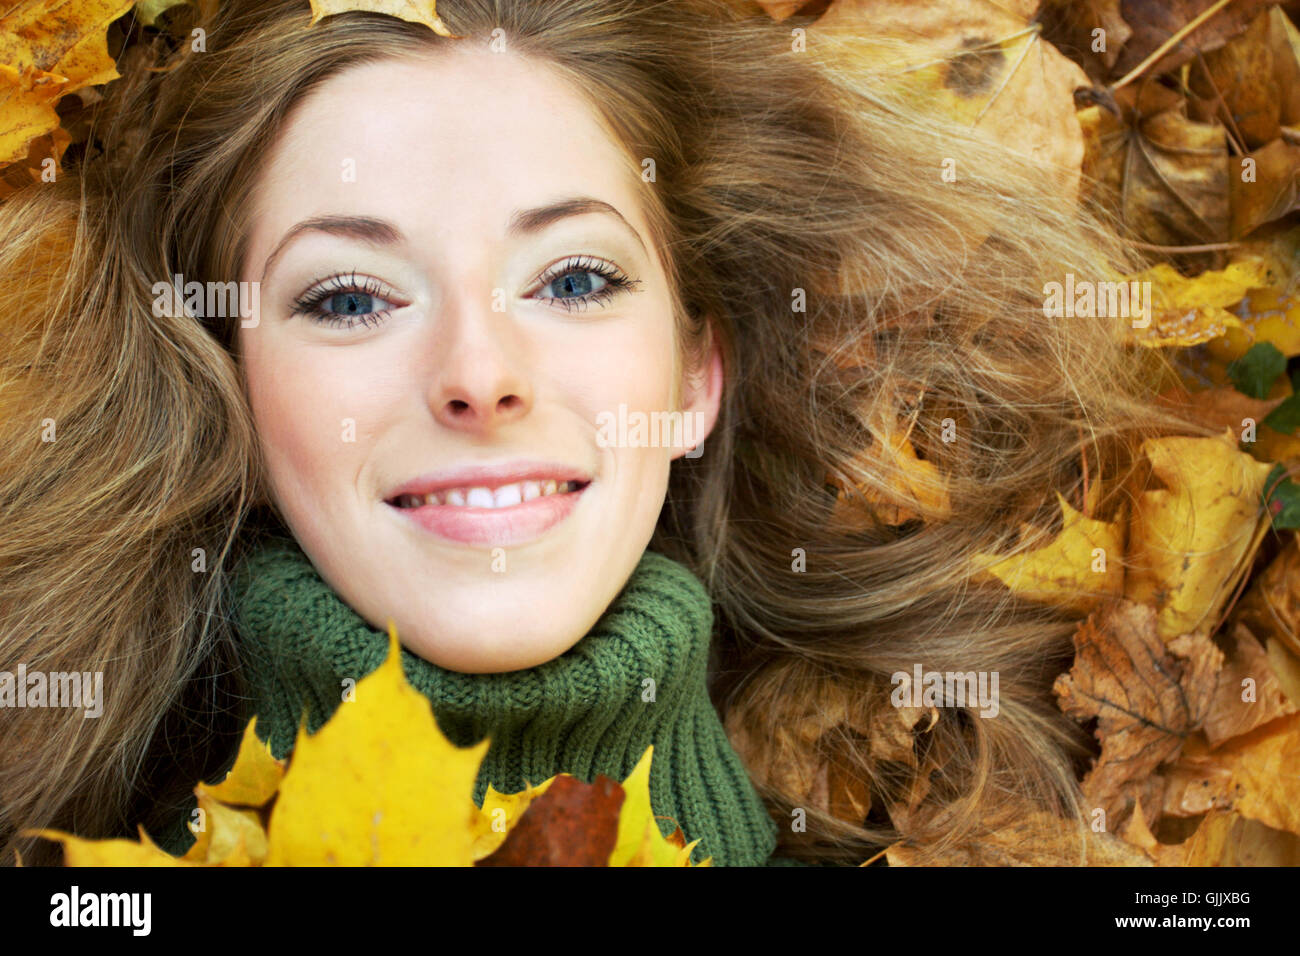 woman face portrait Stock Photo